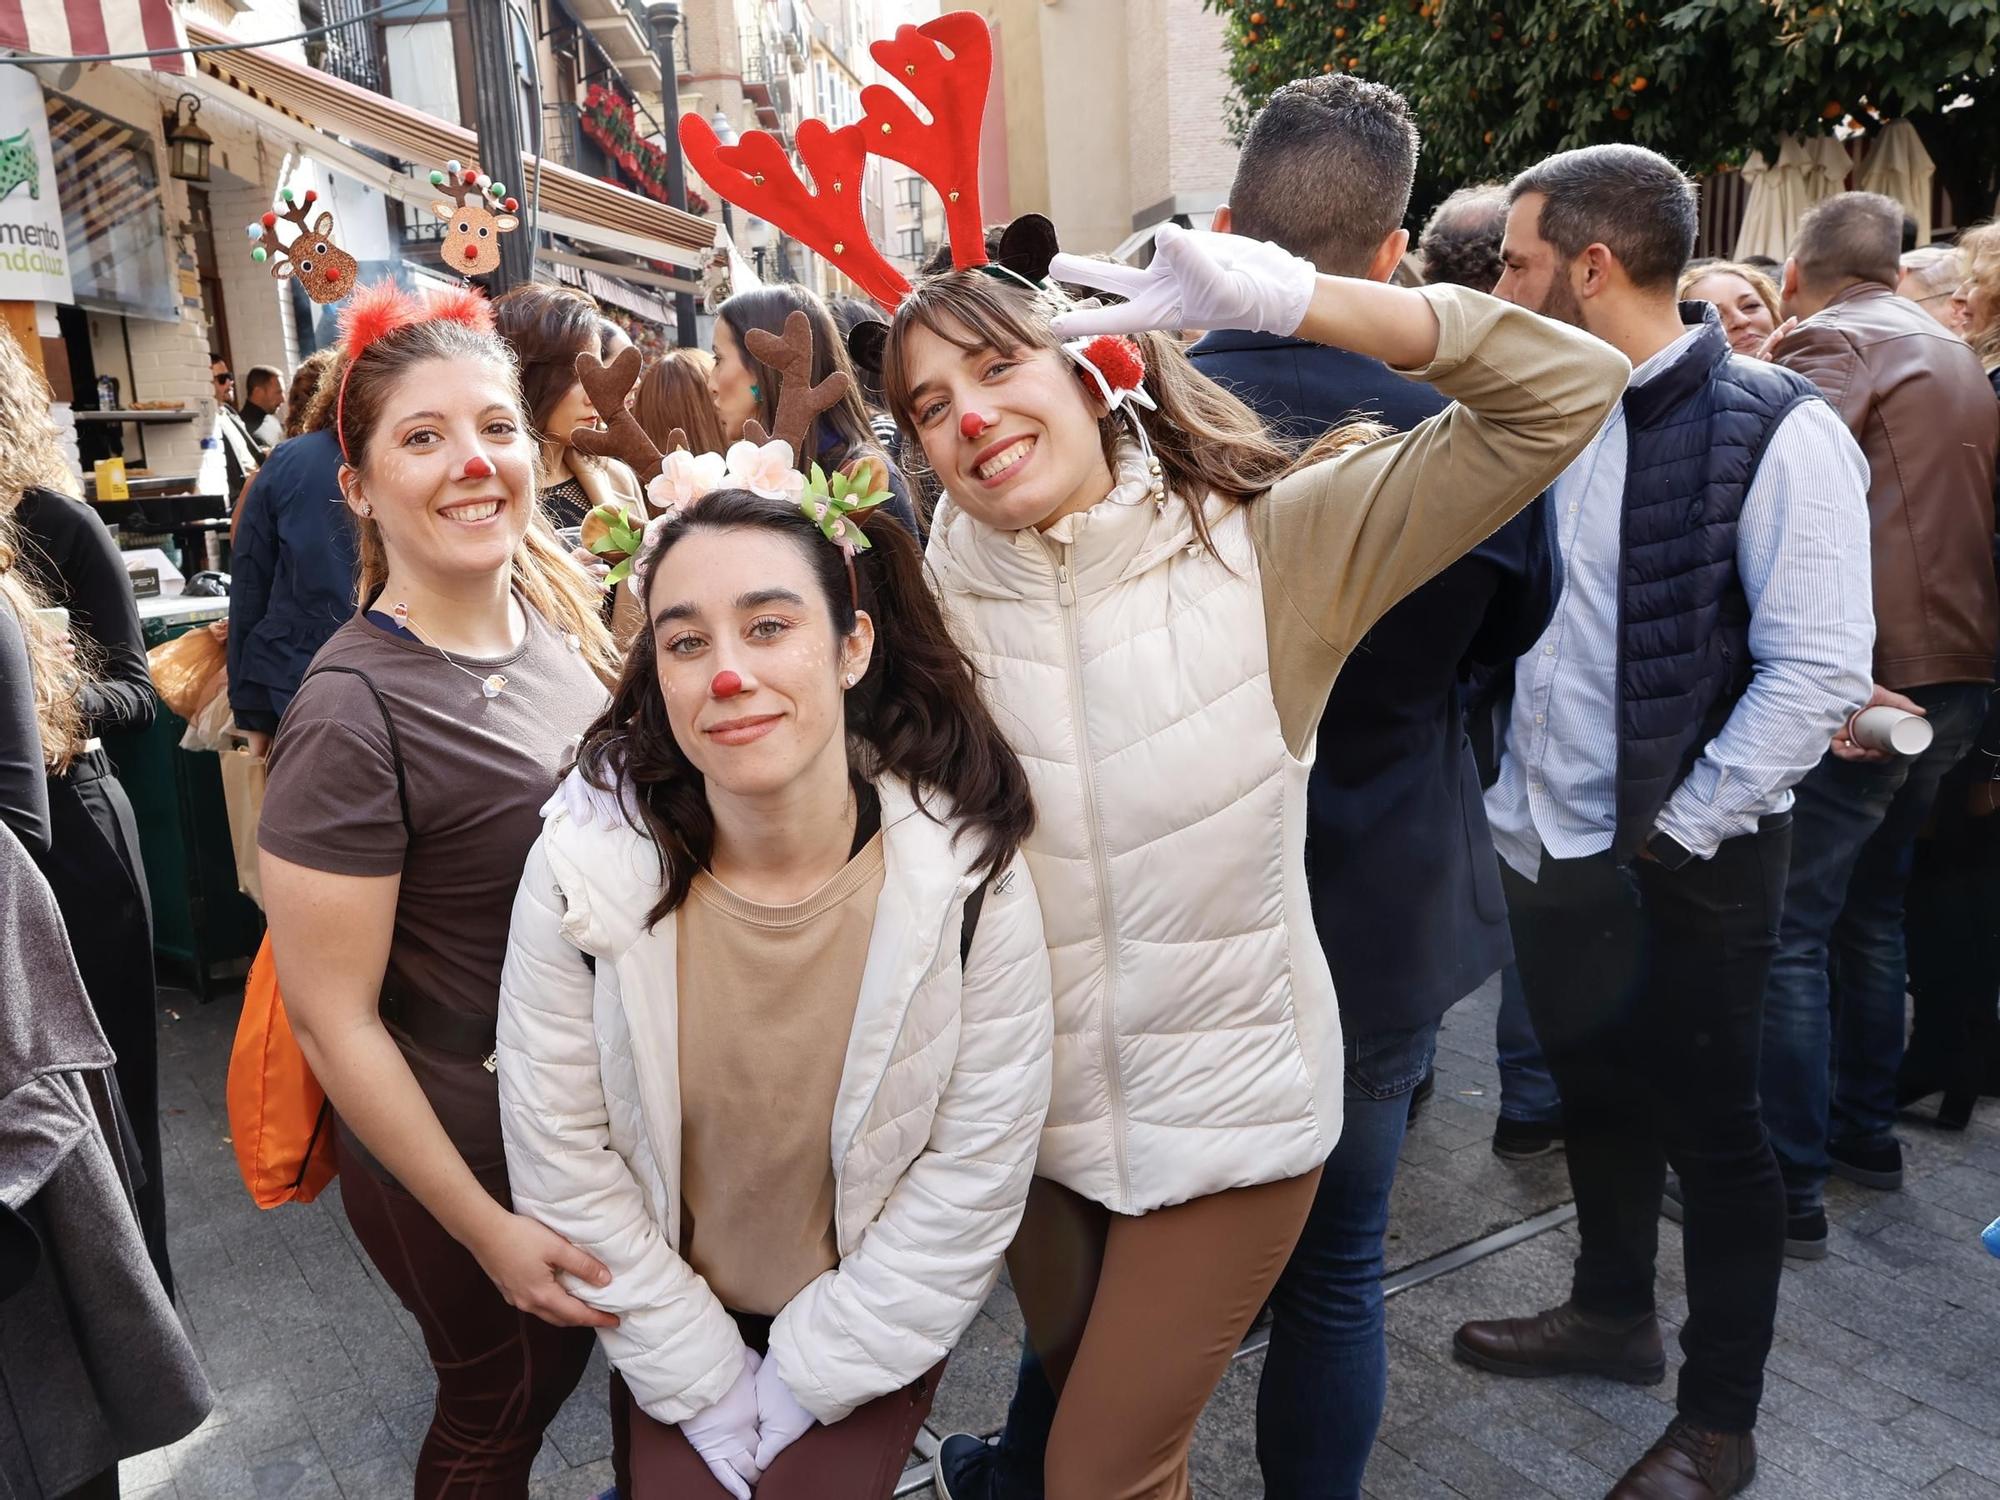 El terdeo de Nochevieja en Murcia, en imágenes